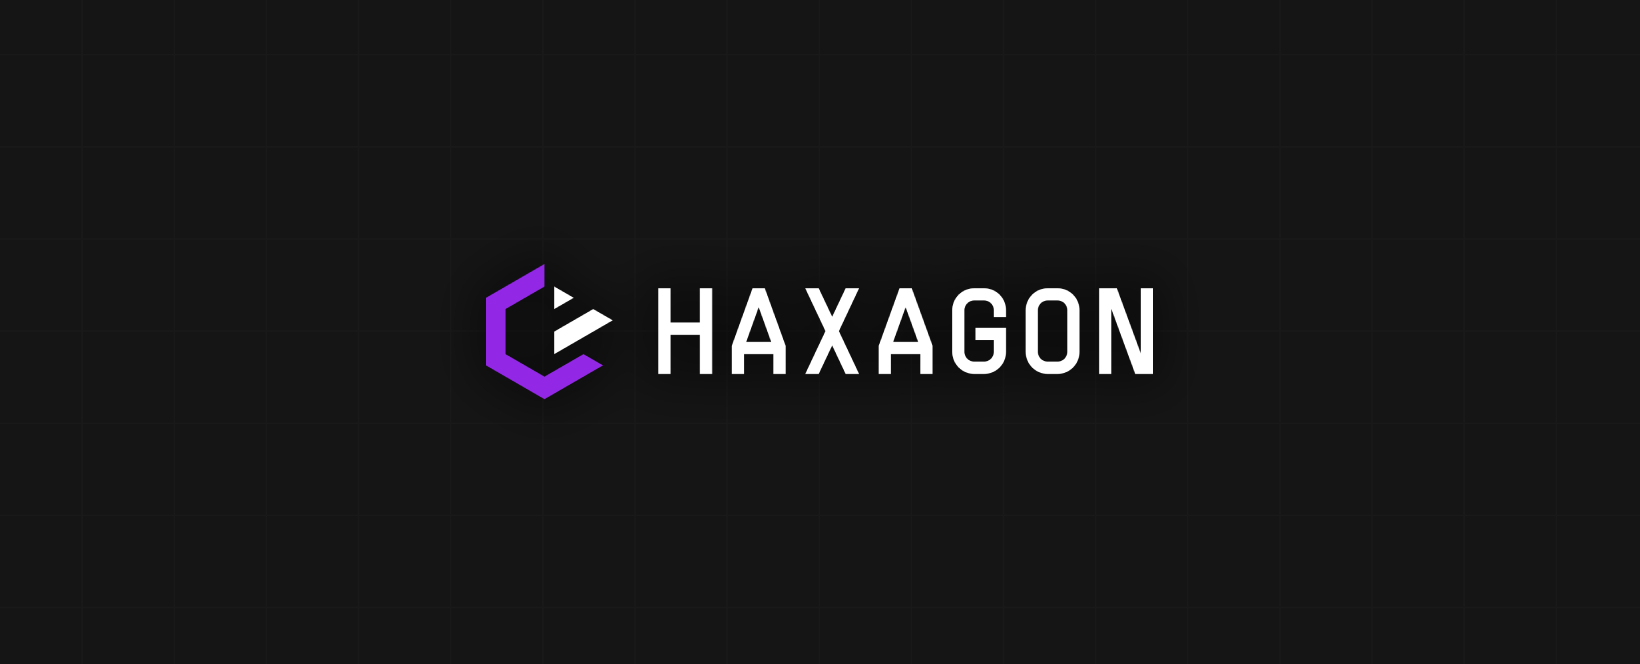 Kraj podpoří výuku kyberbezpečnosti a IT na platformě Haxagon na odborných školách a nově i na gymnáziích